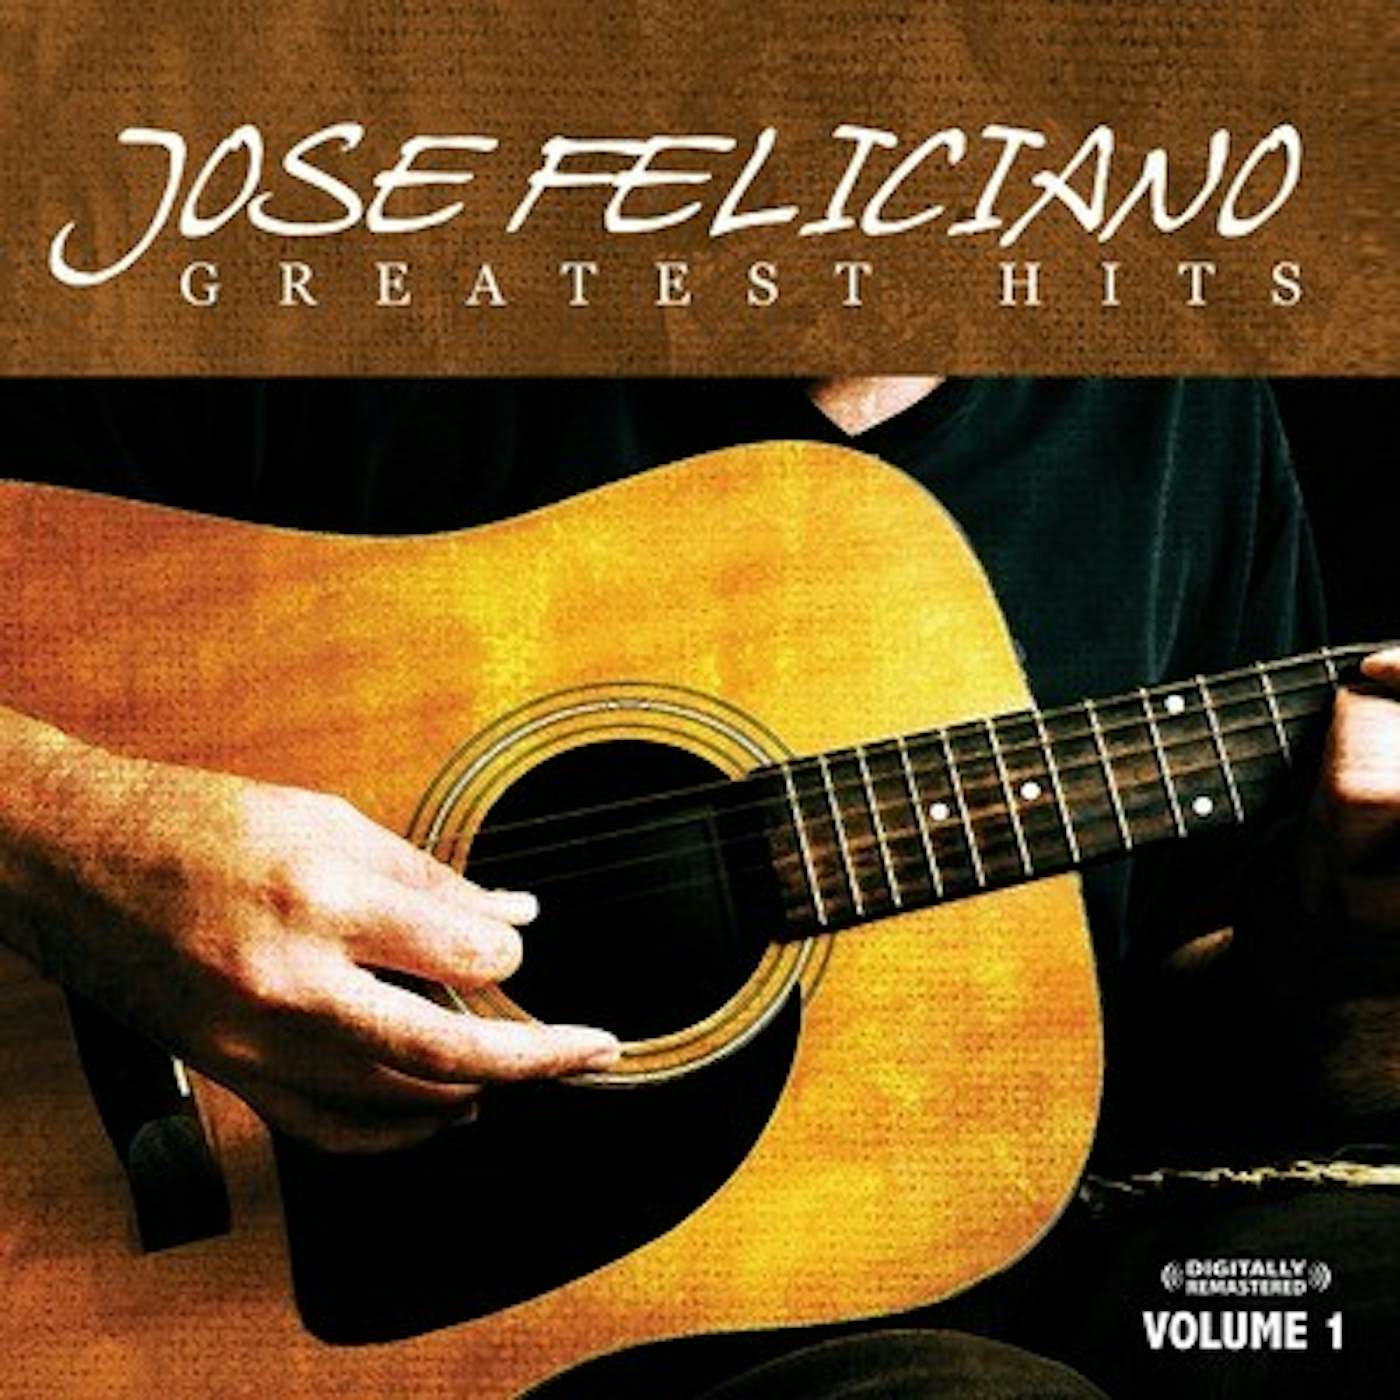 José Feliciano GREATEST HITS VOL. 1 CD